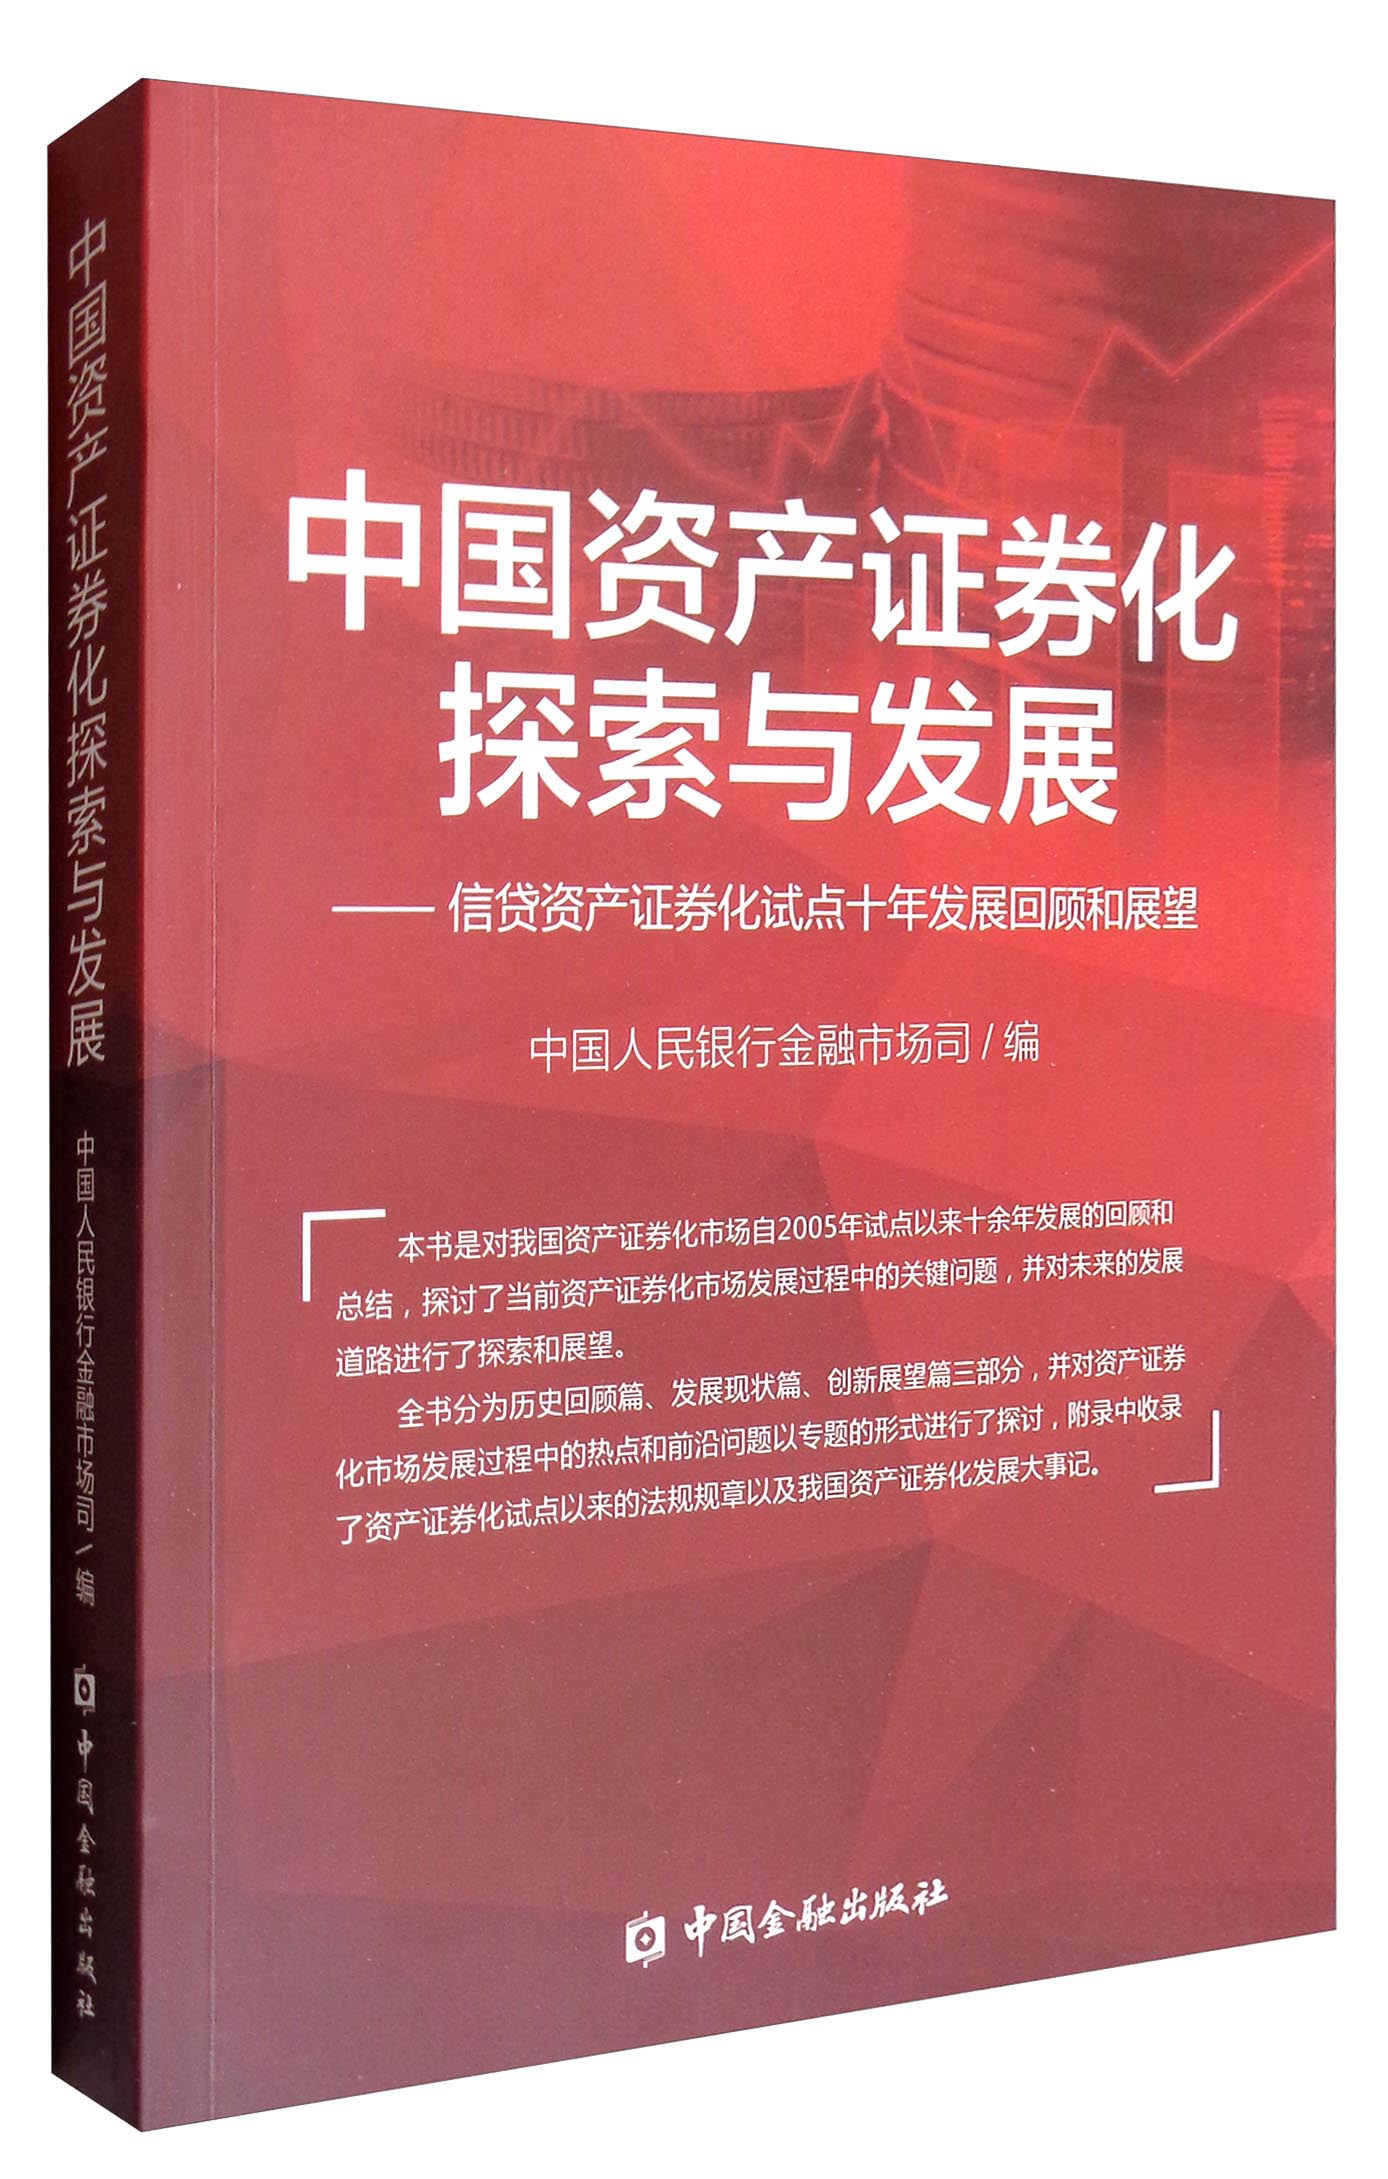 中国资产证券化探索与发展：信贷资产证券化试点十年发展回顾和展望 word格式下载